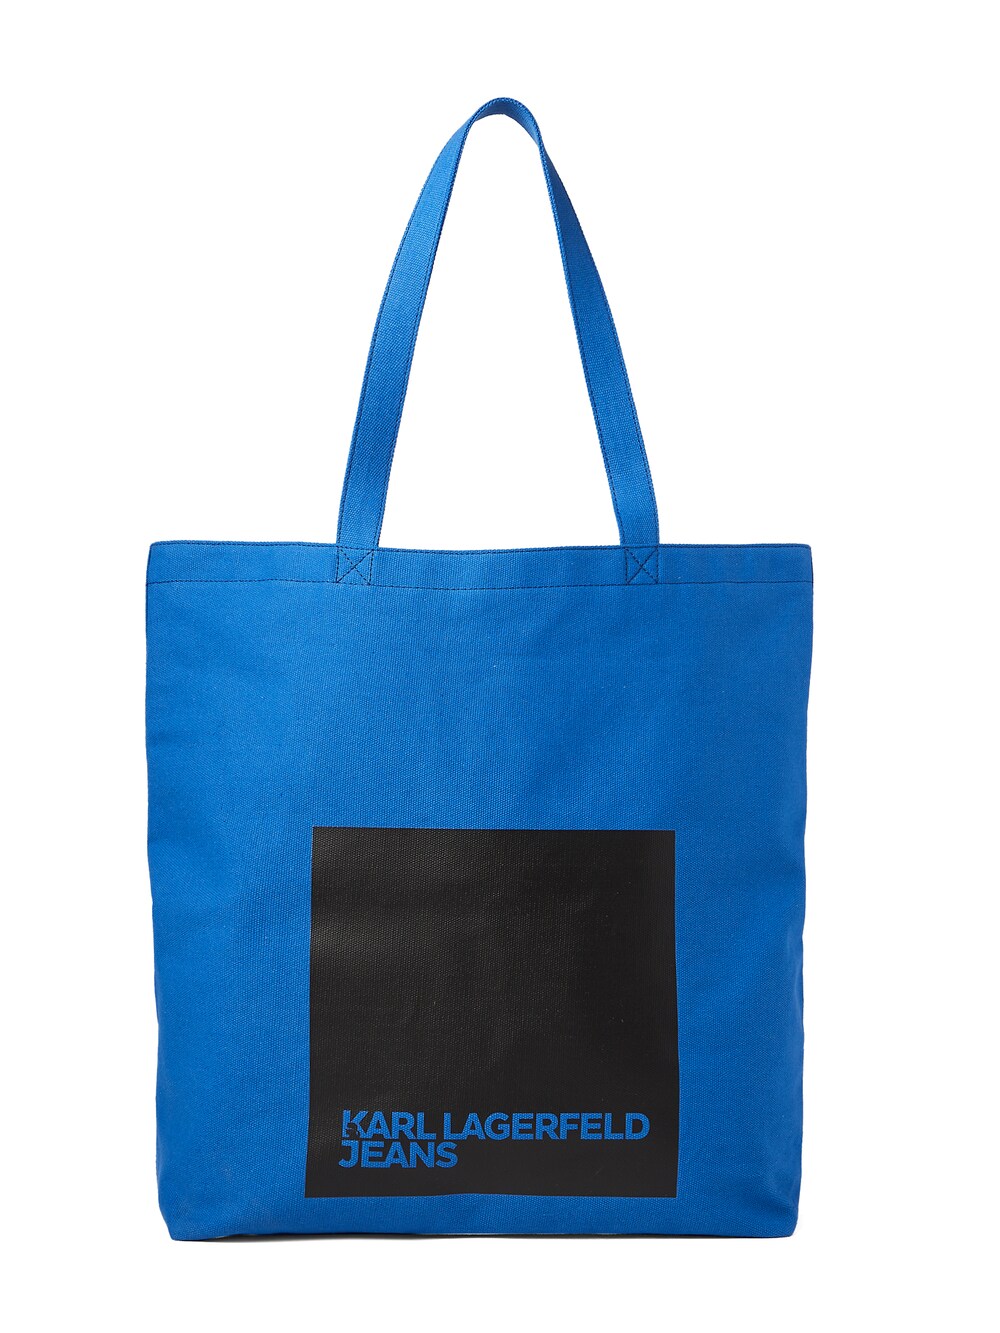 бермуды karl lagerfeld размер 48 синий Сумка-шоппер KARL LAGERFELD JEANS, синий